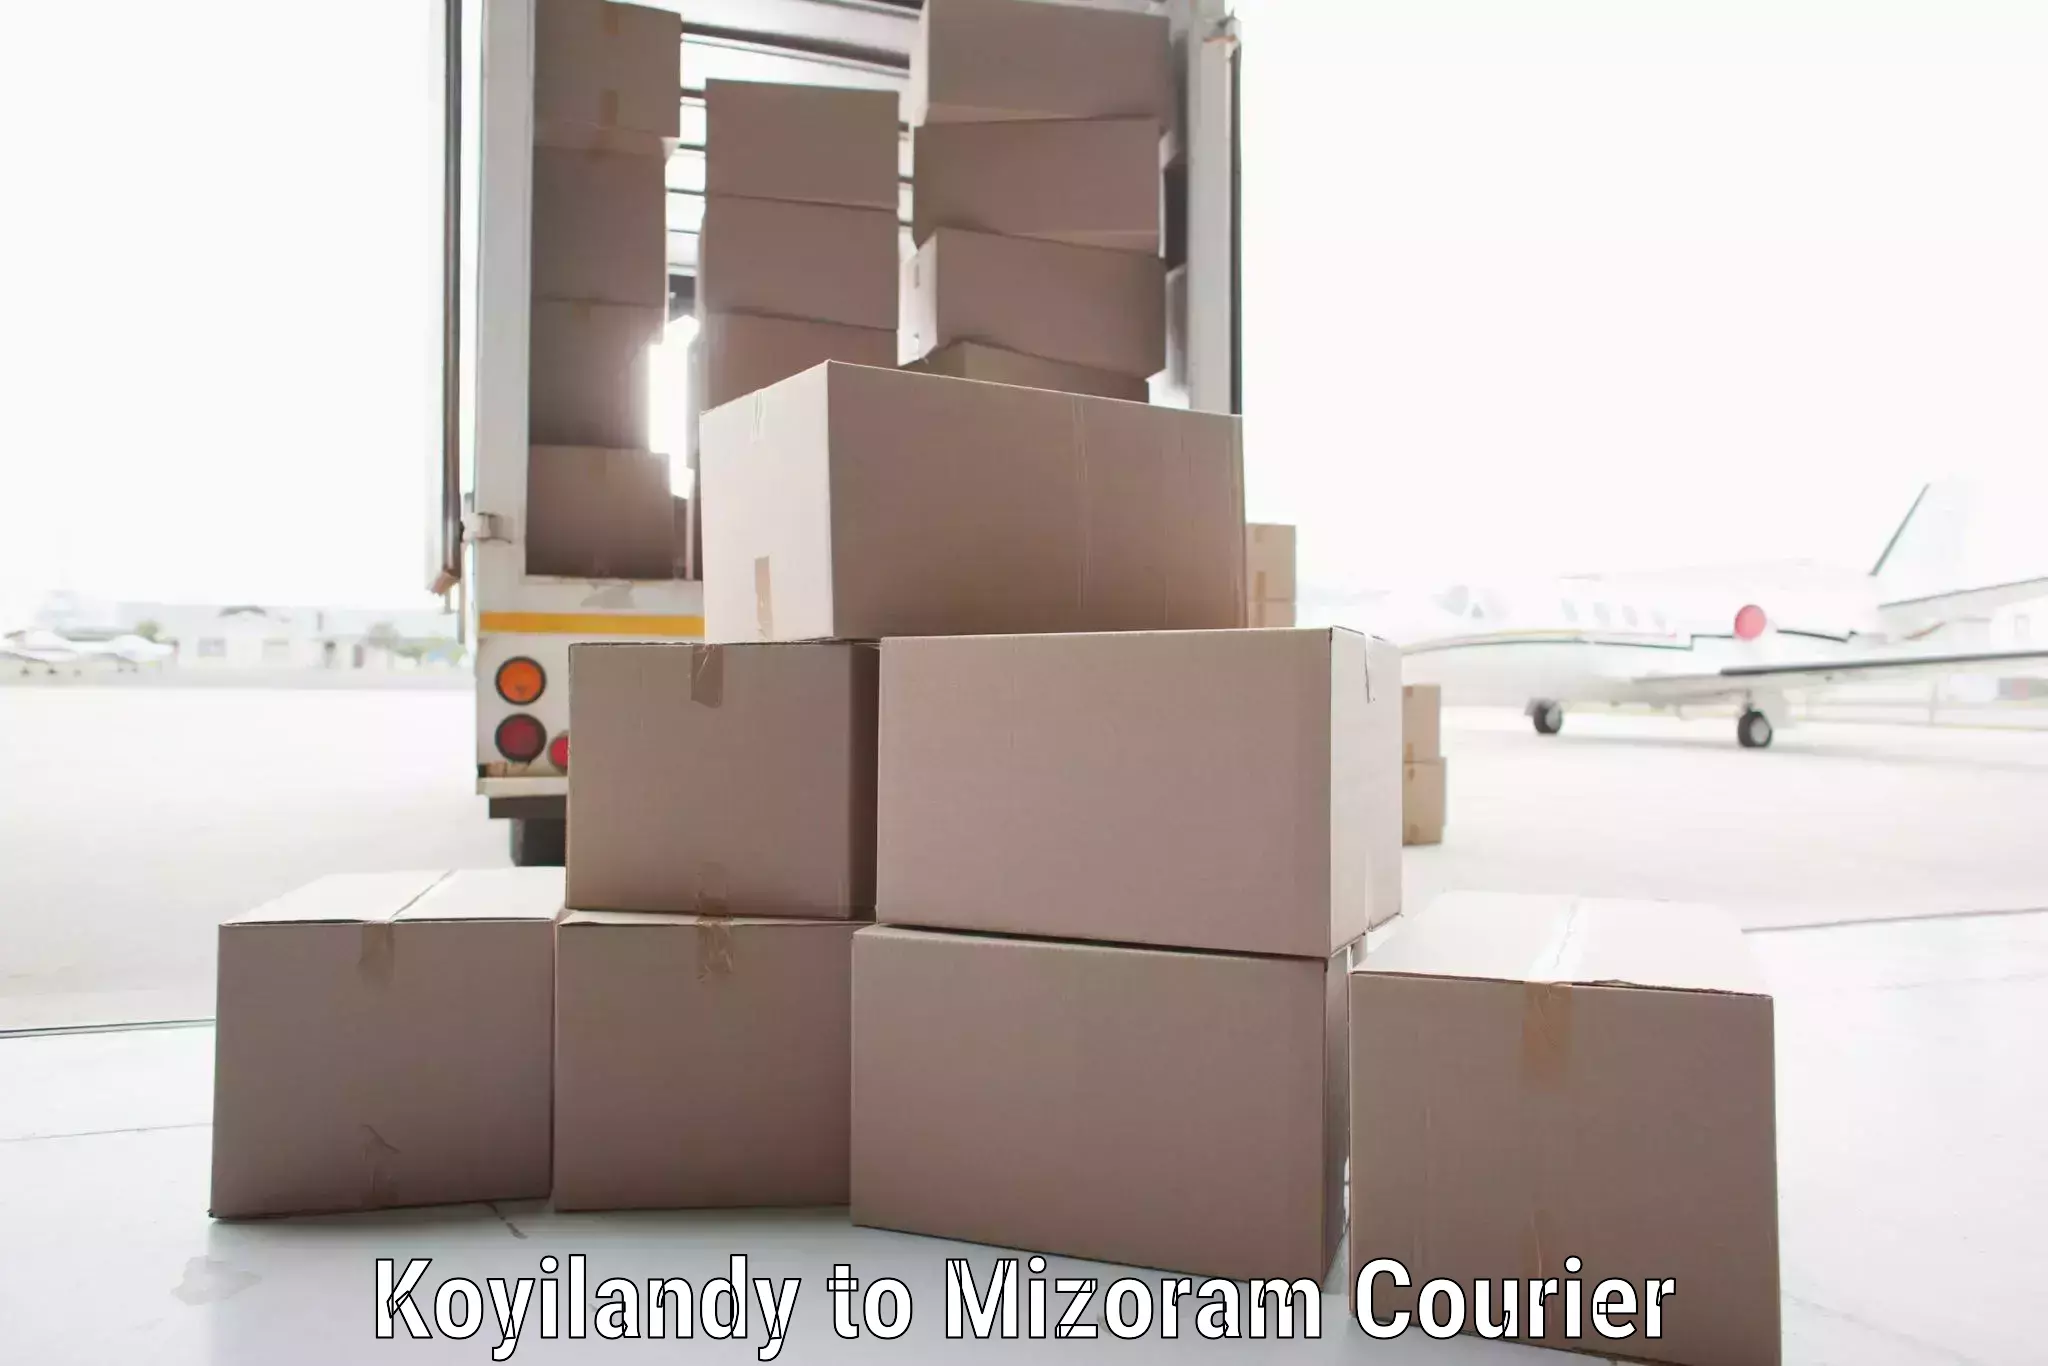 Courier services Koyilandy to Serchhip